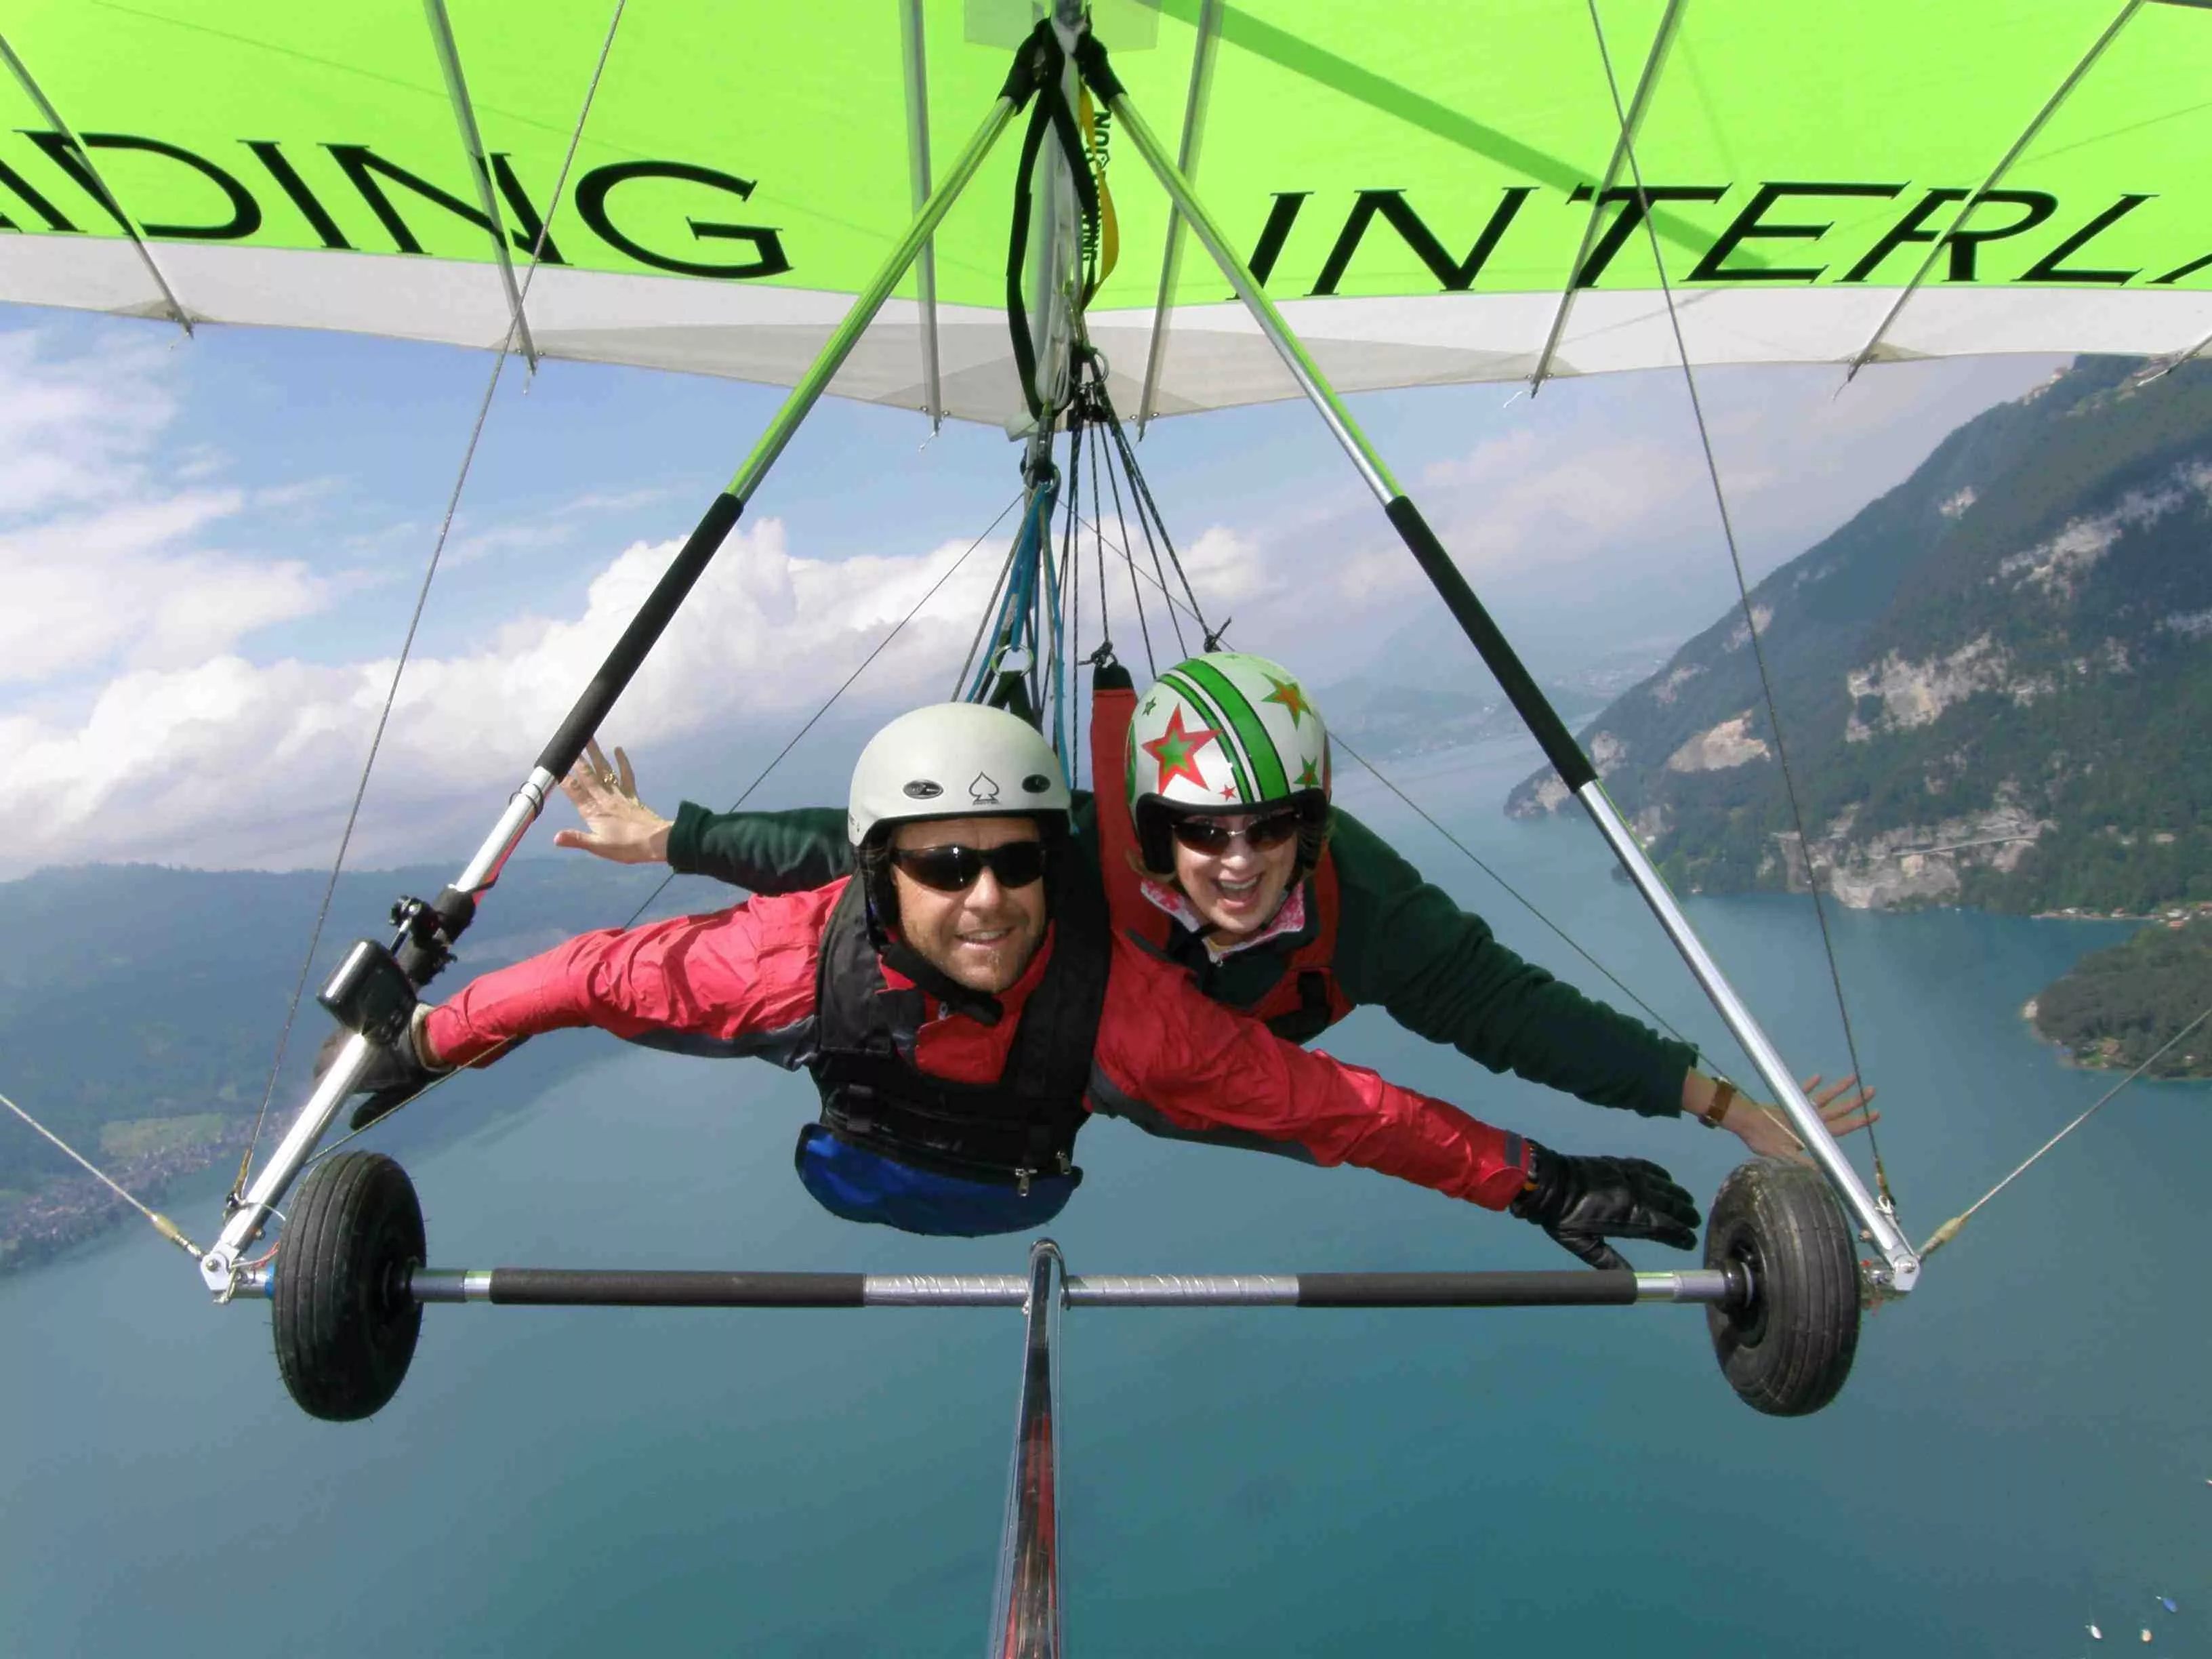 Hang Gliding Interlaken in Switzerland, Europe | Hang Gliding - Rated 4.5